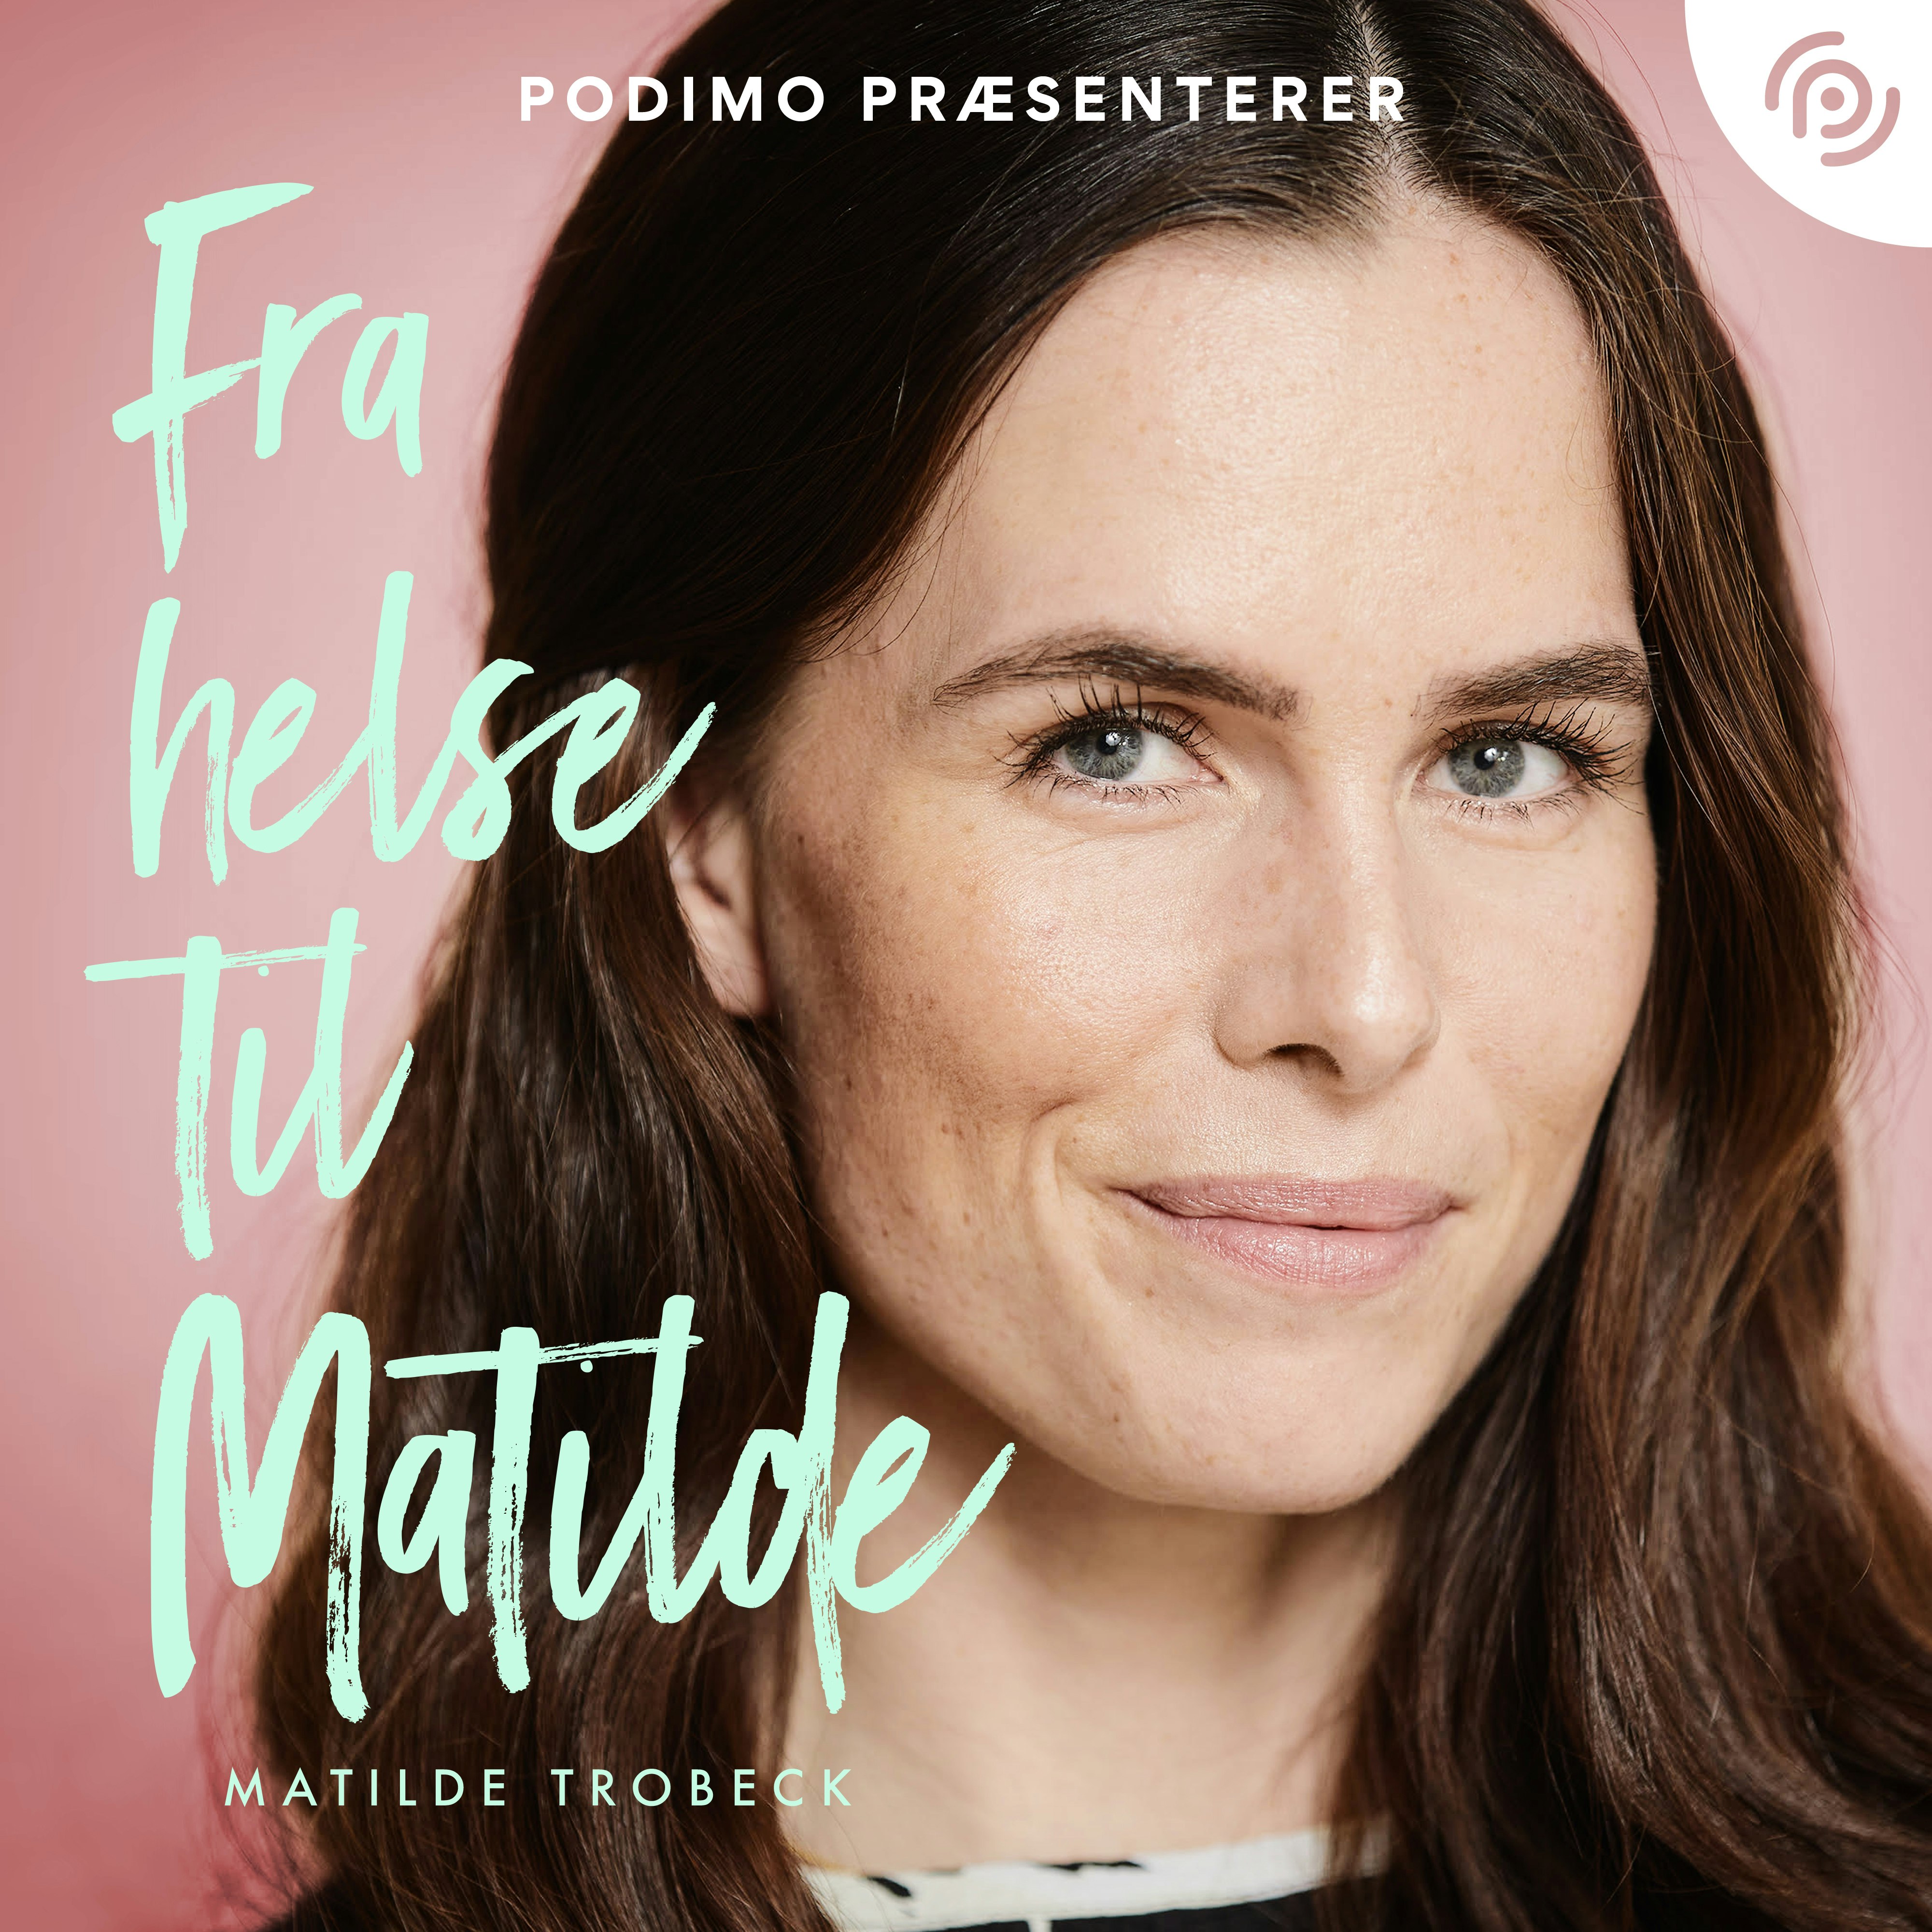 Matilde Trobeck har udgivet hendes nye podcast 'Fra helse Til Matilde'